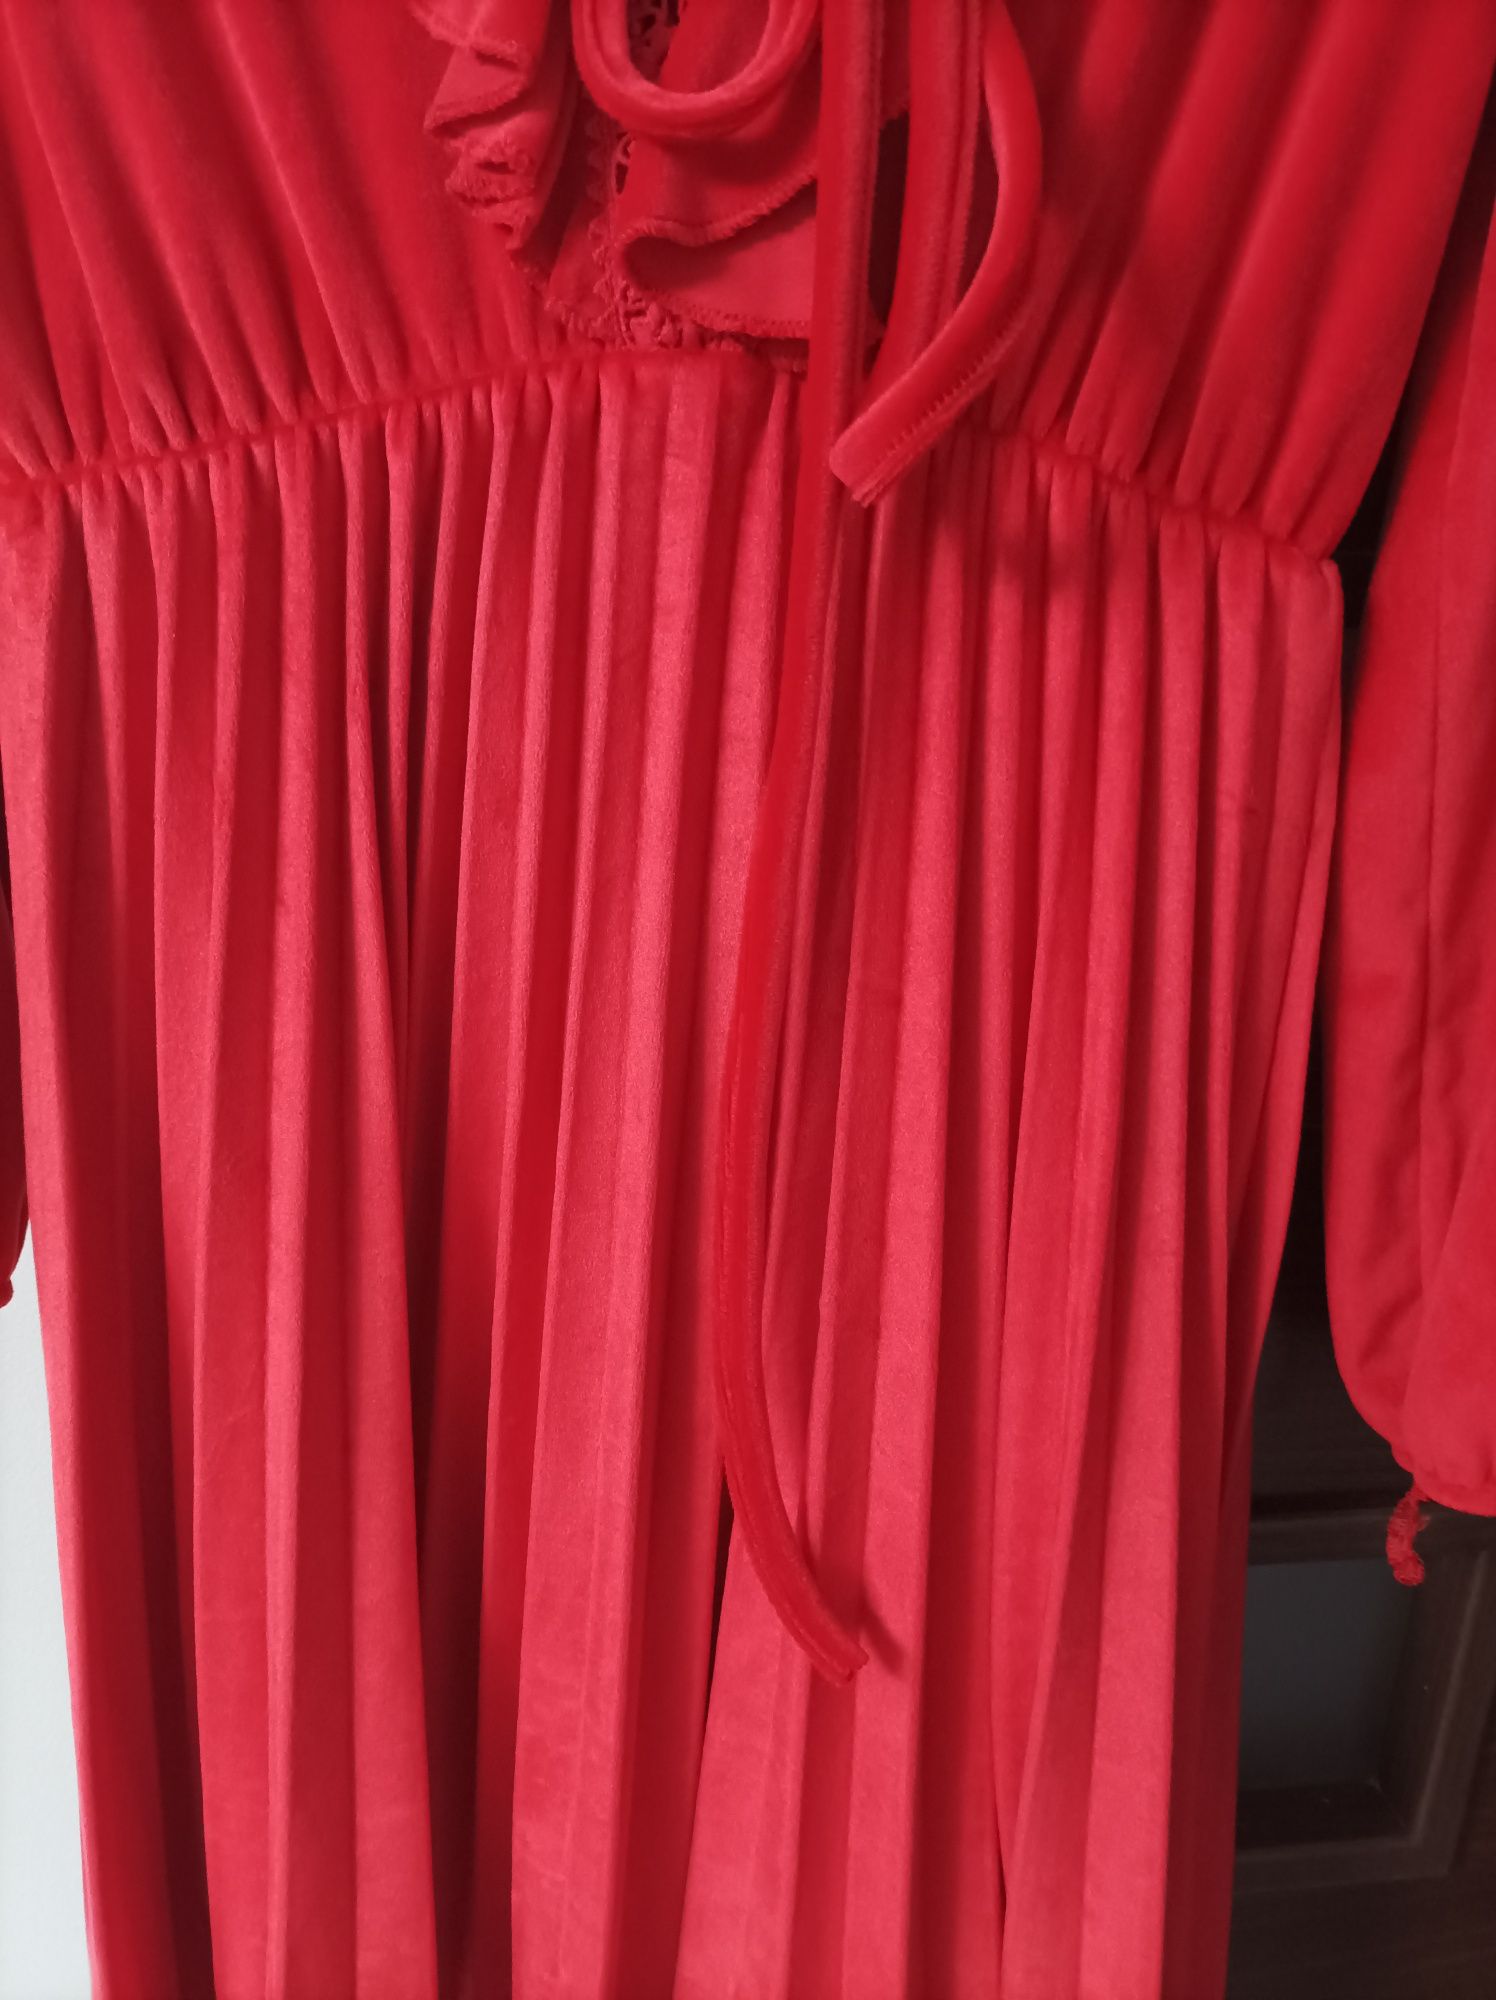 Sukienka czerwona uniwersalna